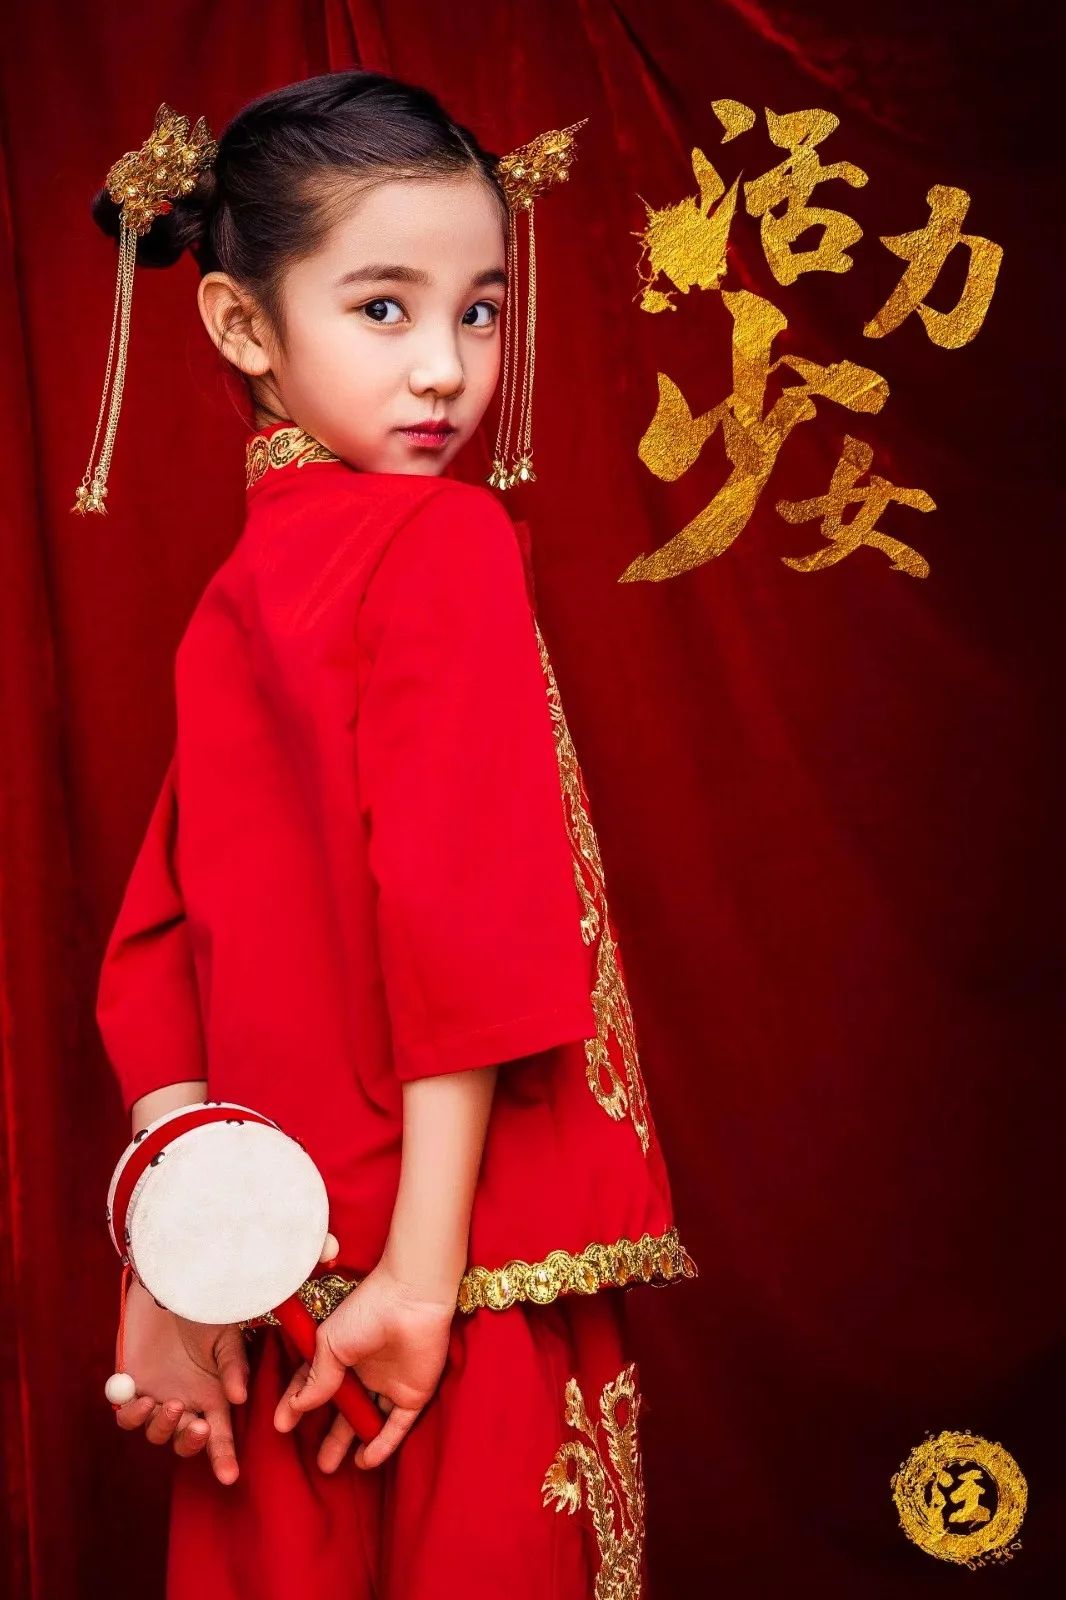 上海儿童摄影工作室_上海儿童古装摄影_上海萌摄影创意儿童写真